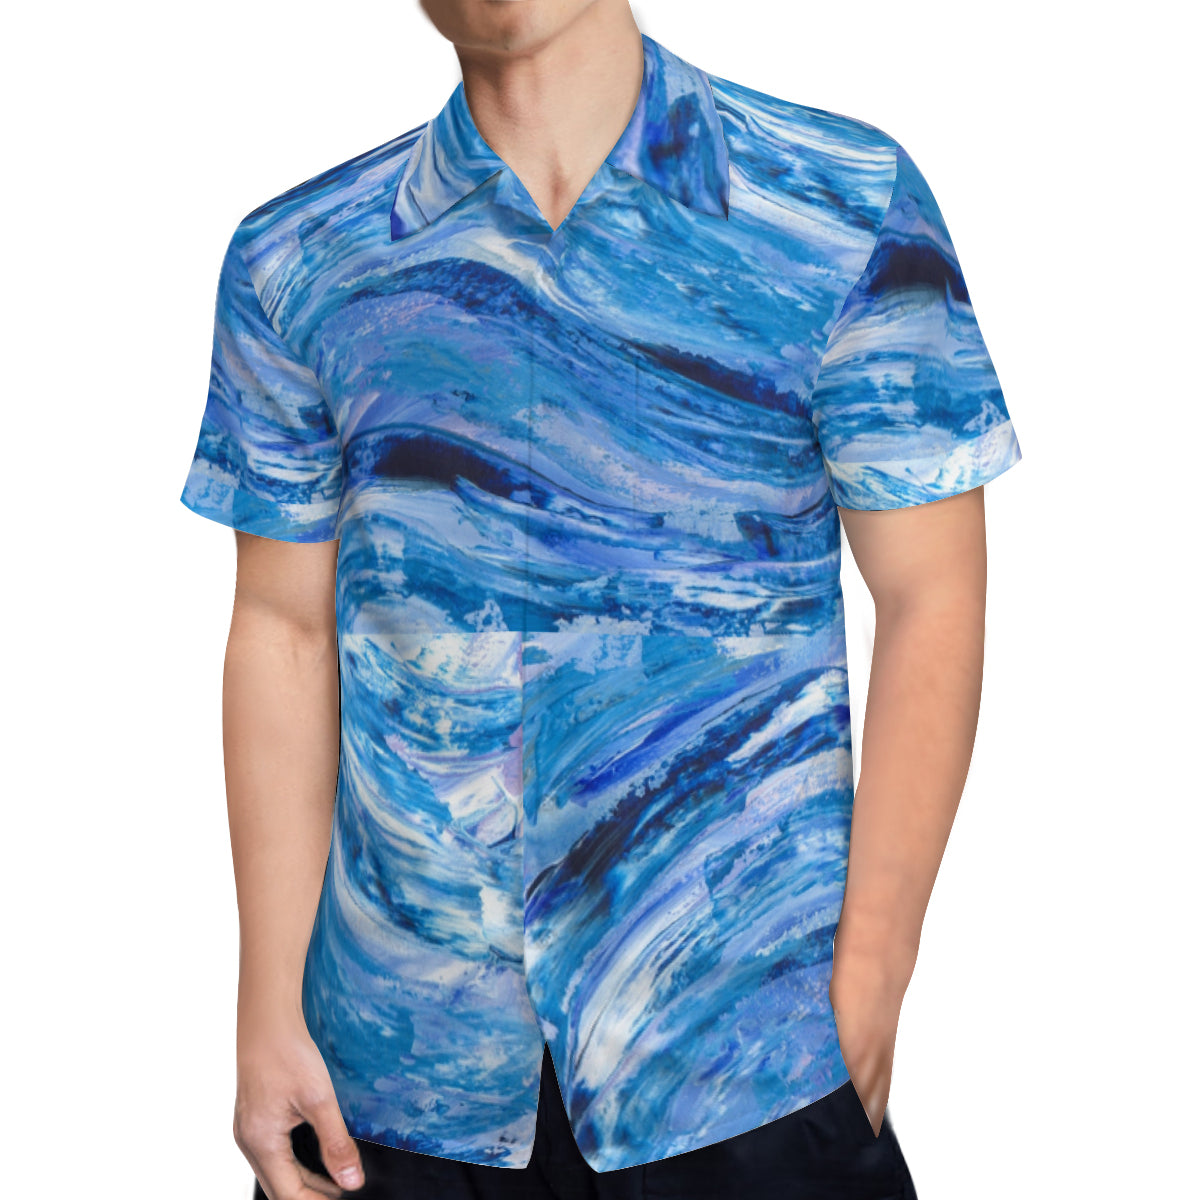 Hawaiin shirt - Rogue wave